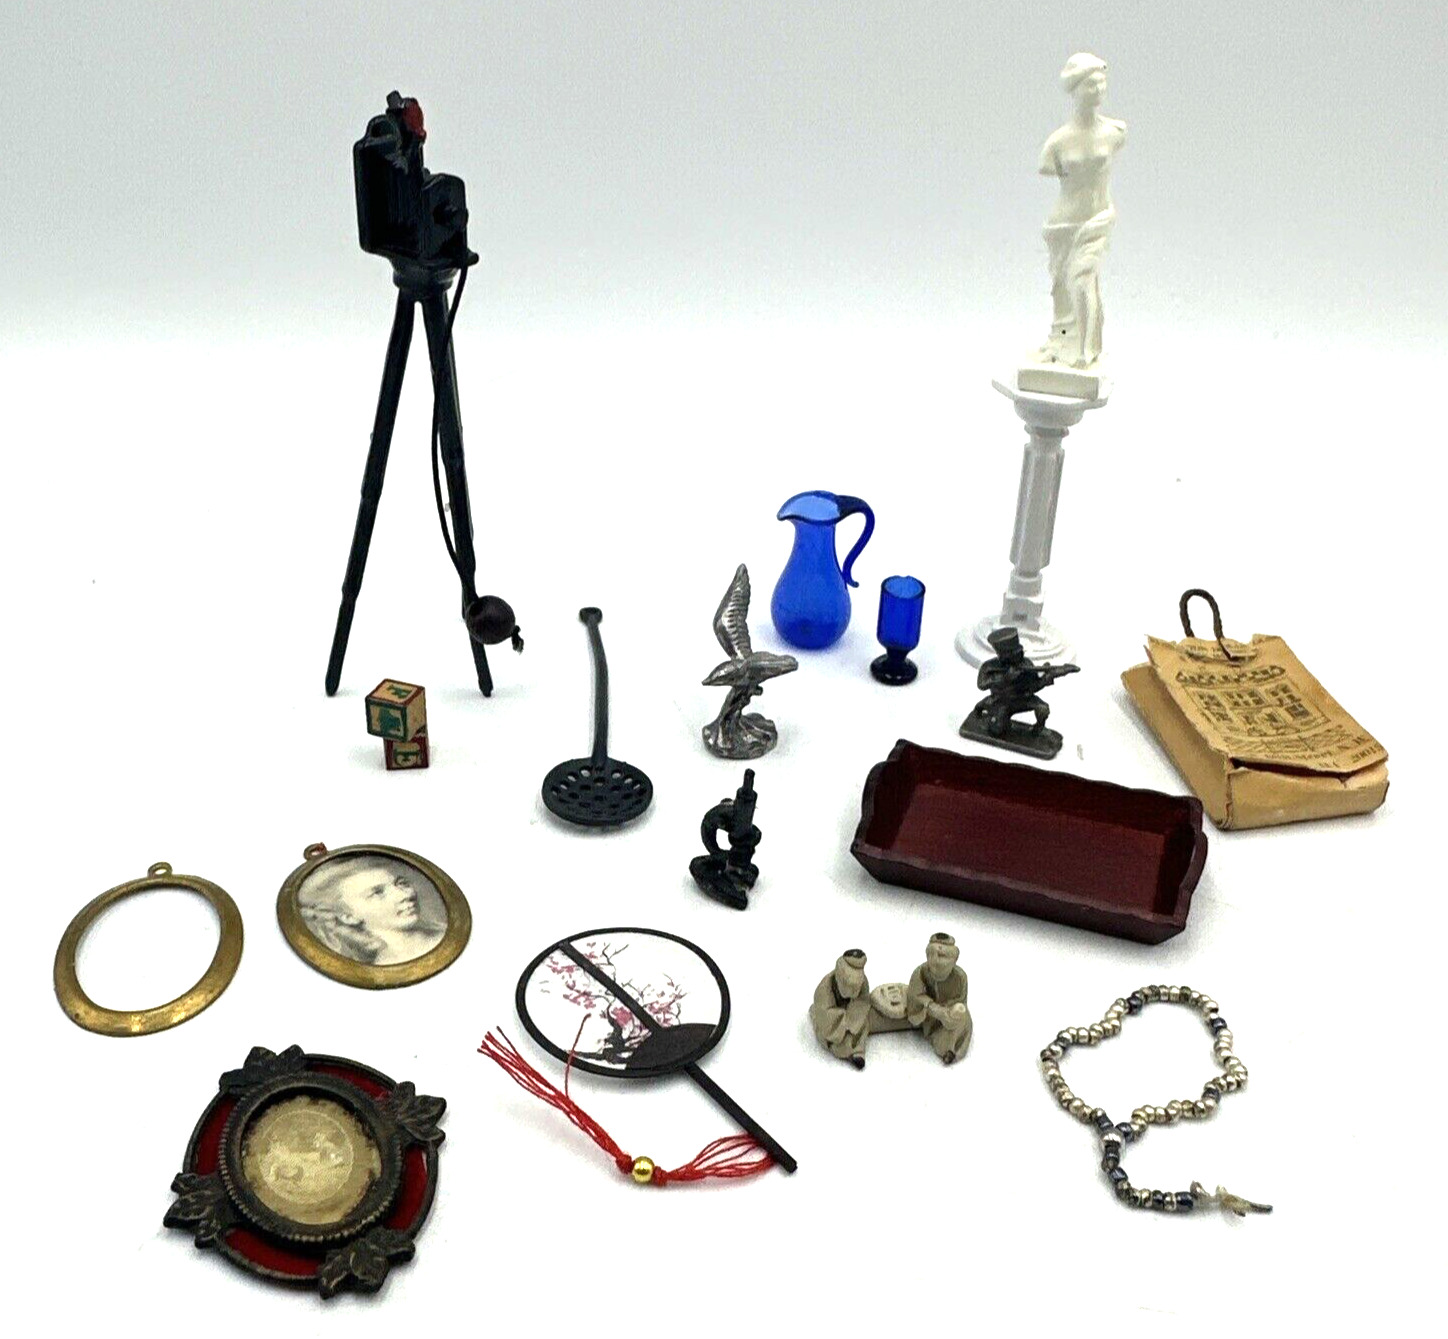 Vintage Dollhouse Miniature Accessories Decor 18 Pc Mixed Lot 1:12